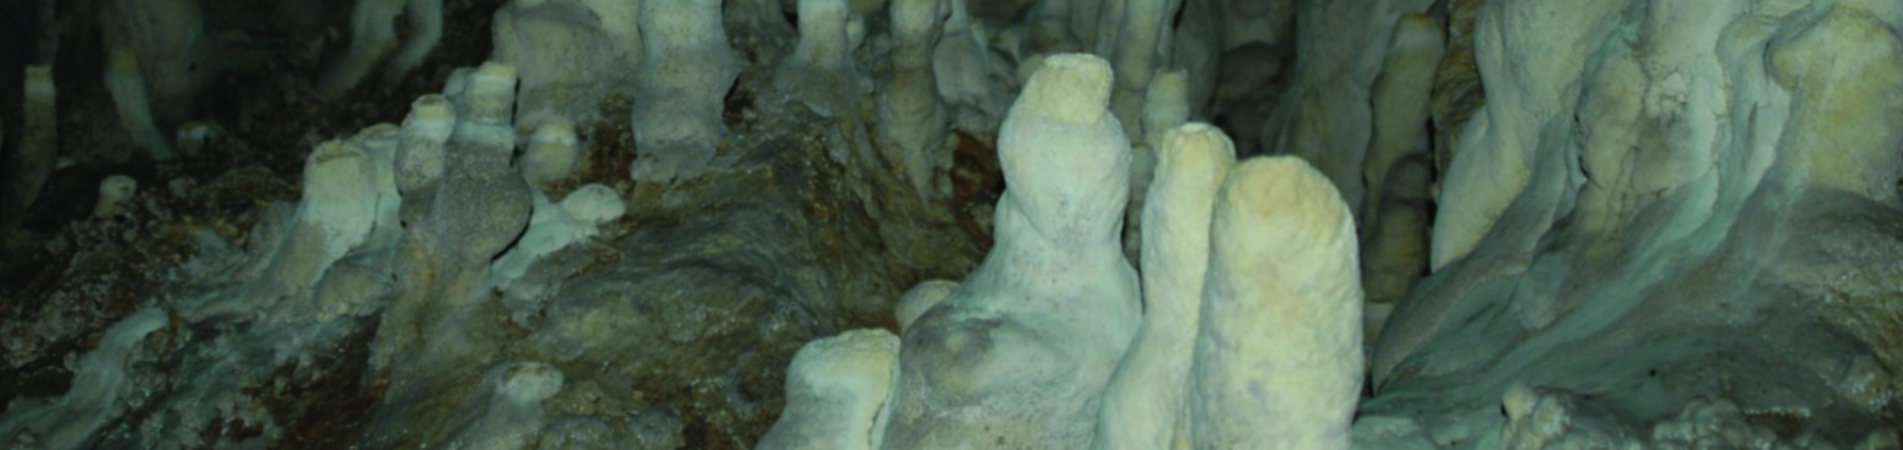 Buca’nın Mağaraları